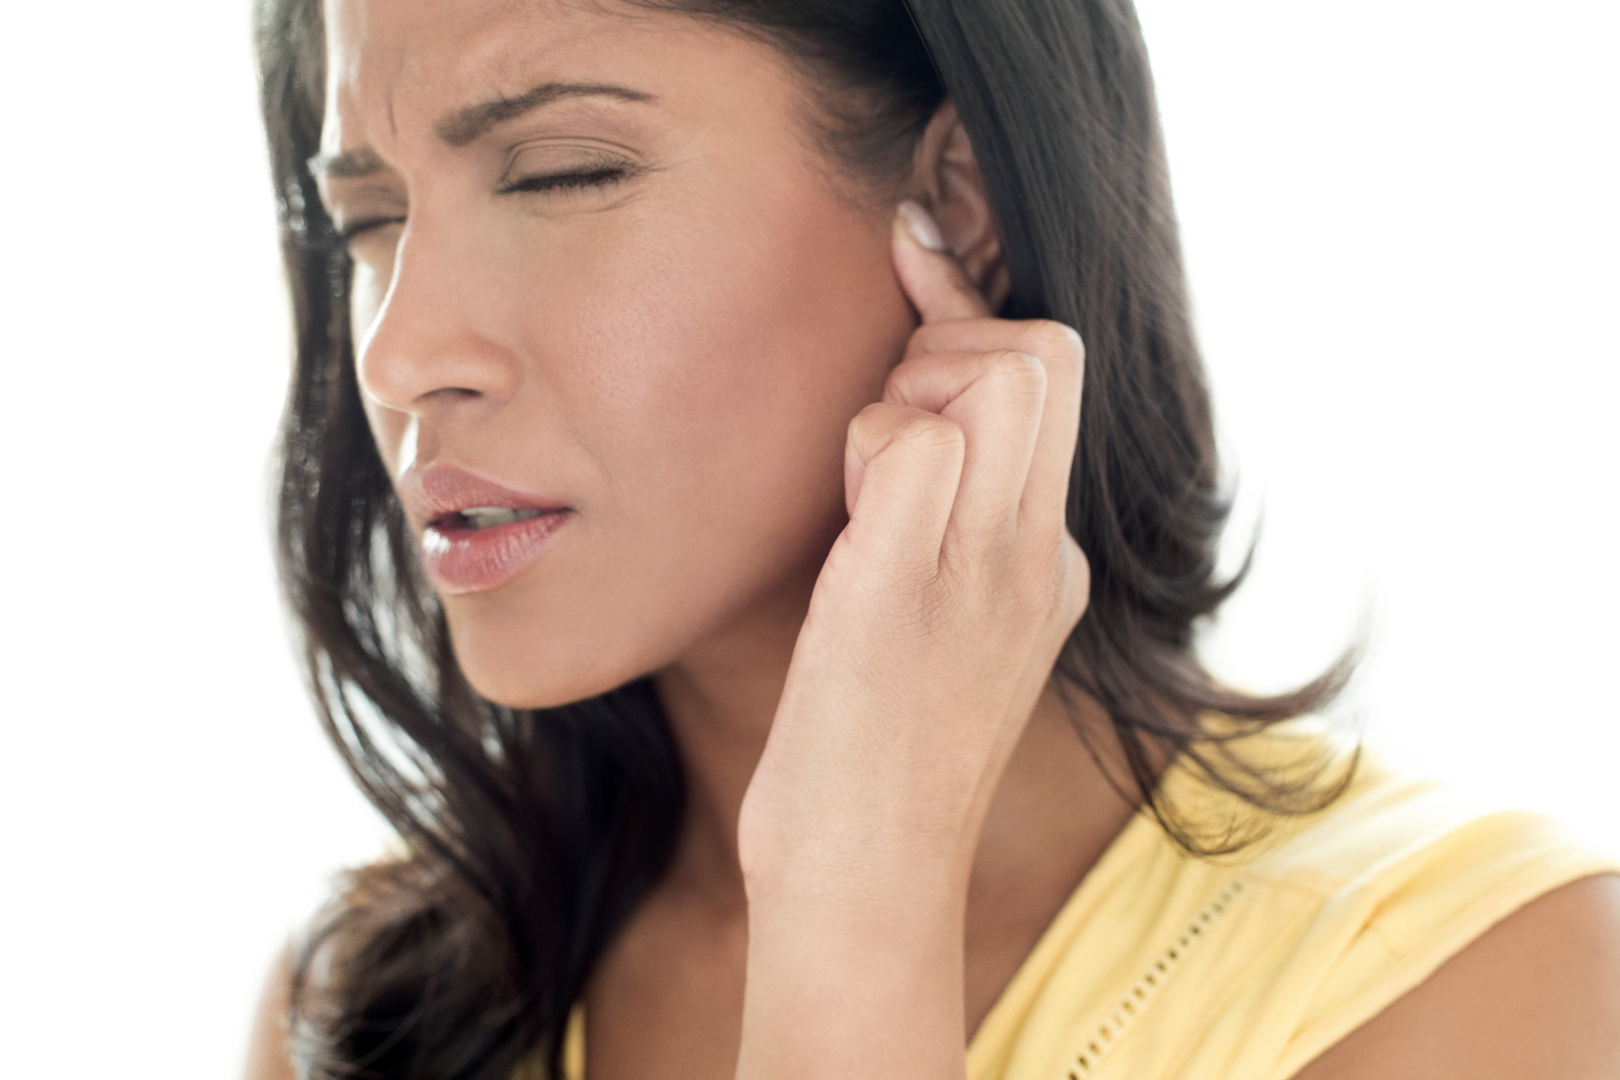 طنين في الأذنين وأعراض غير متوقعة يشير ظهورها إلى إصابة بمرض فيروسي